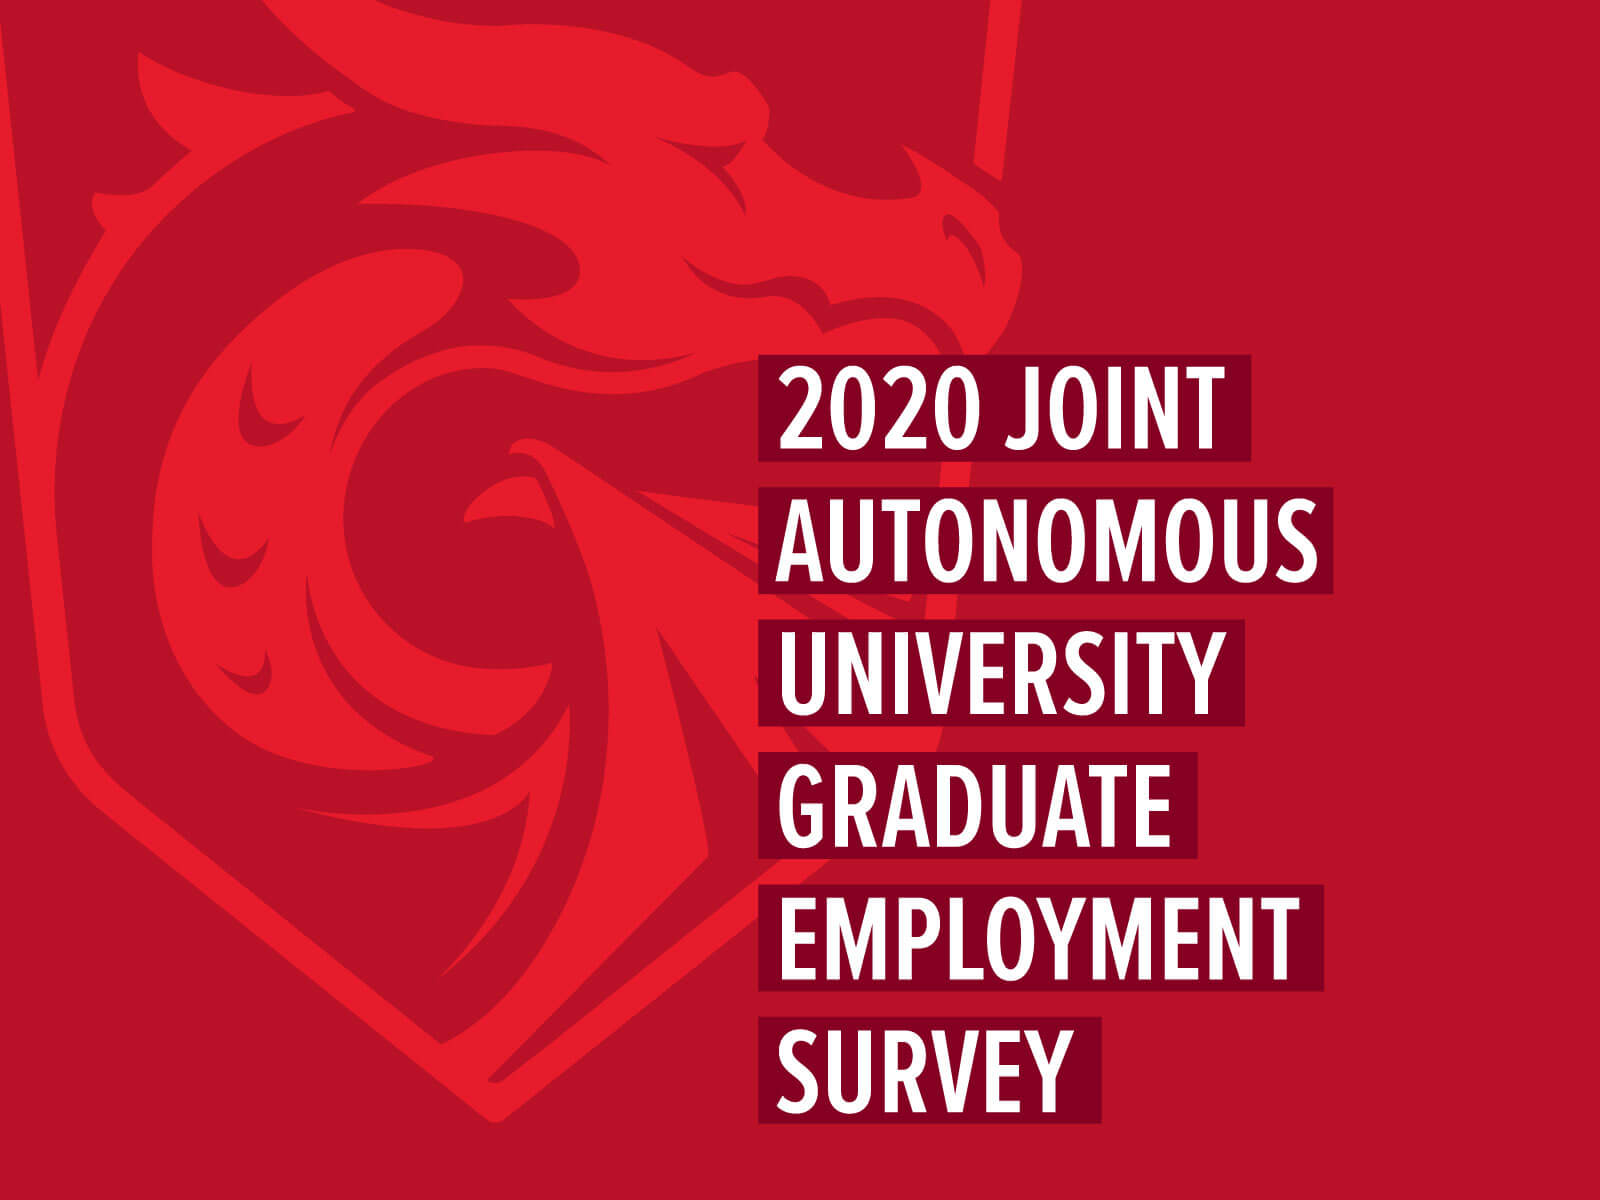 '2020 Join Autonomous University Graduate Employment Survey' text on top of red dragon logo